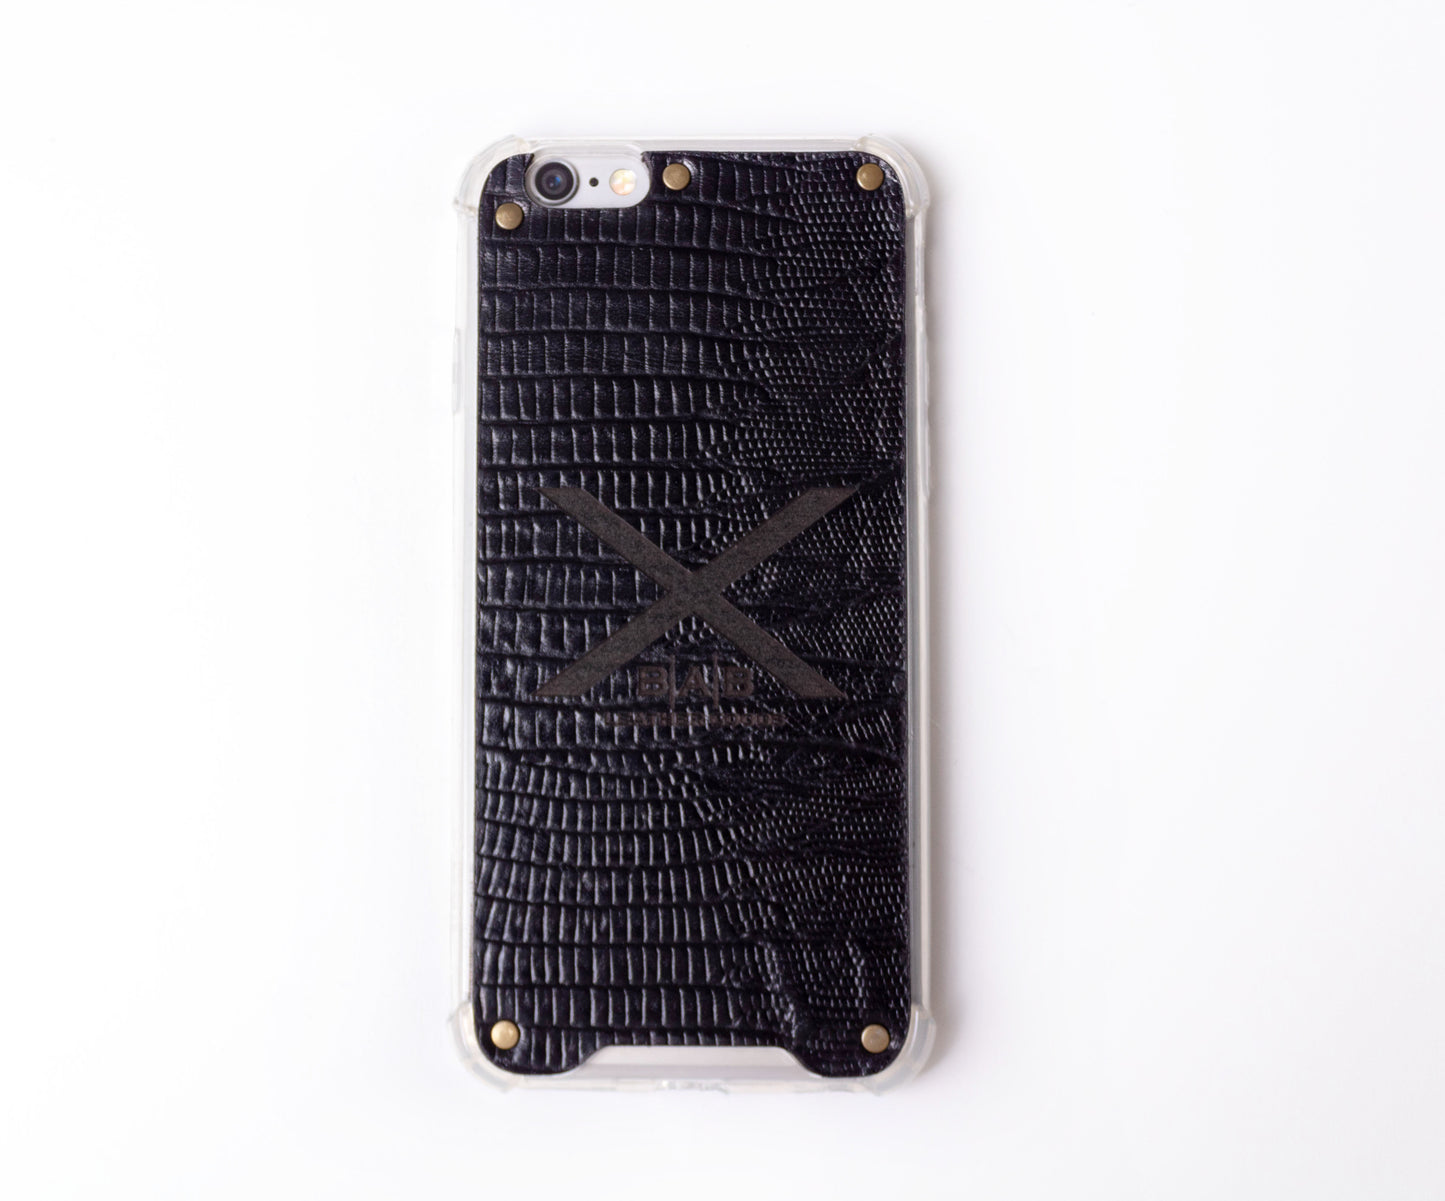 Coque pour iPhone en  Cuir Véritable Lézard Noir Texturé, découpée et gravée au laser, 5 Rivets en Bronze.- F36